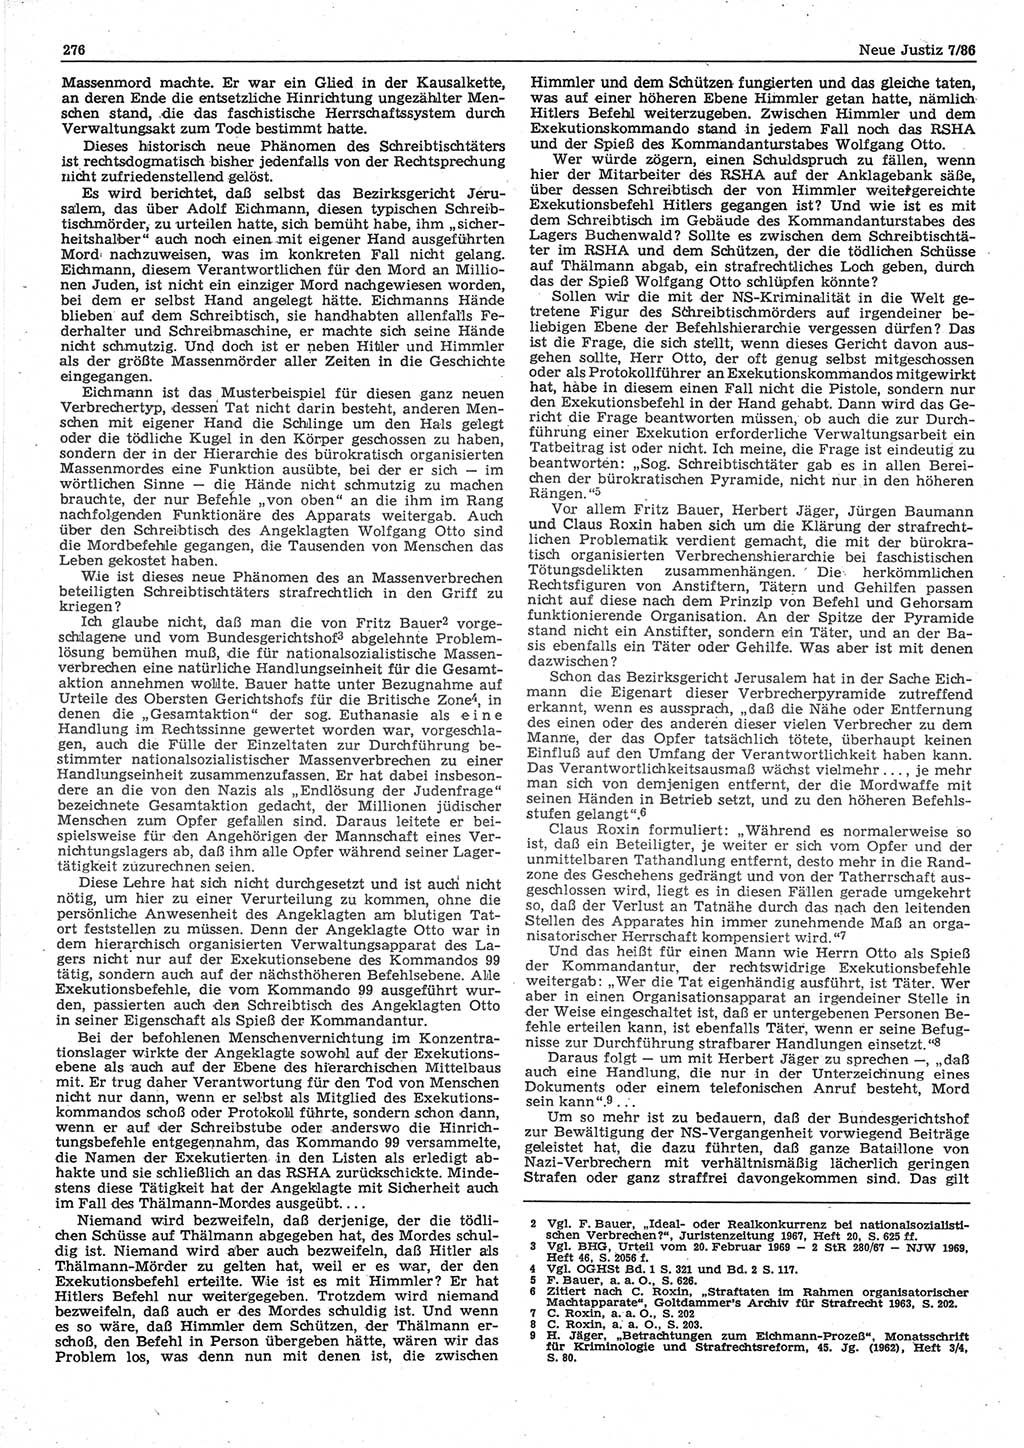 Neue Justiz (NJ), Zeitschrift für sozialistisches Recht und Gesetzlichkeit [Deutsche Demokratische Republik (DDR)], 40. Jahrgang 1986, Seite 276 (NJ DDR 1986, S. 276)